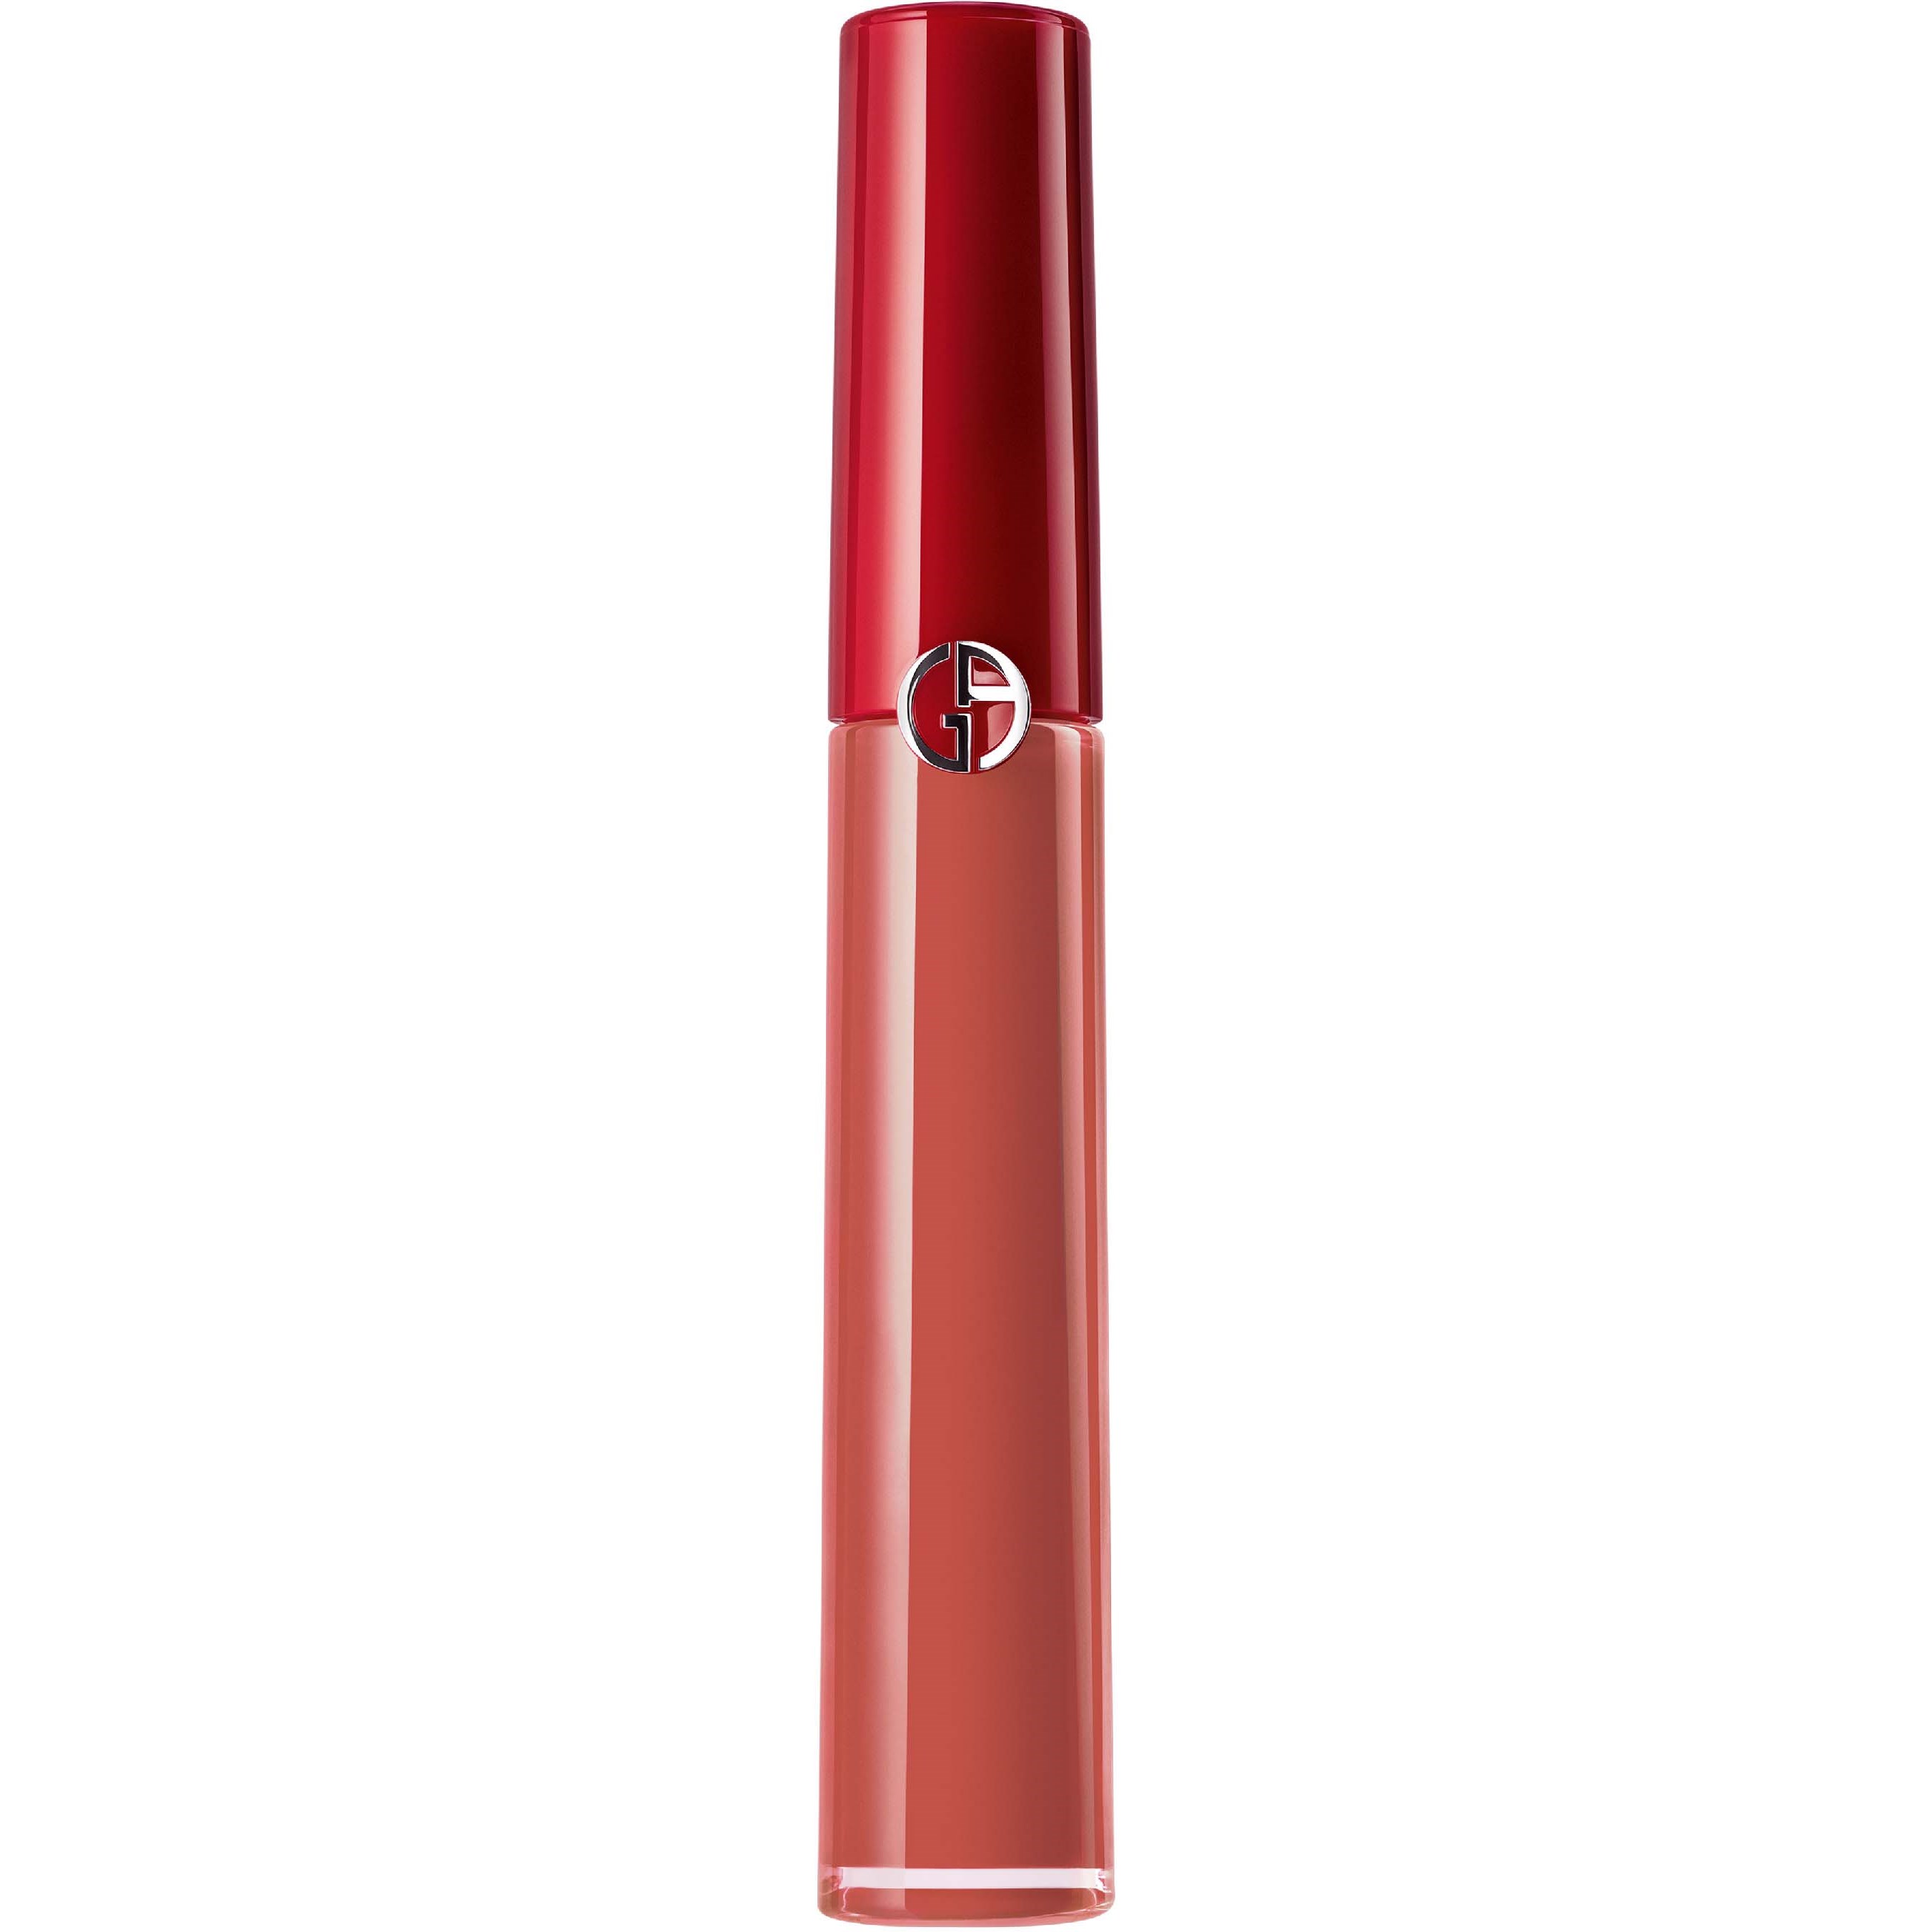 Giorgio Armani Beauty Lip Maestro Liquid Lipstick 421